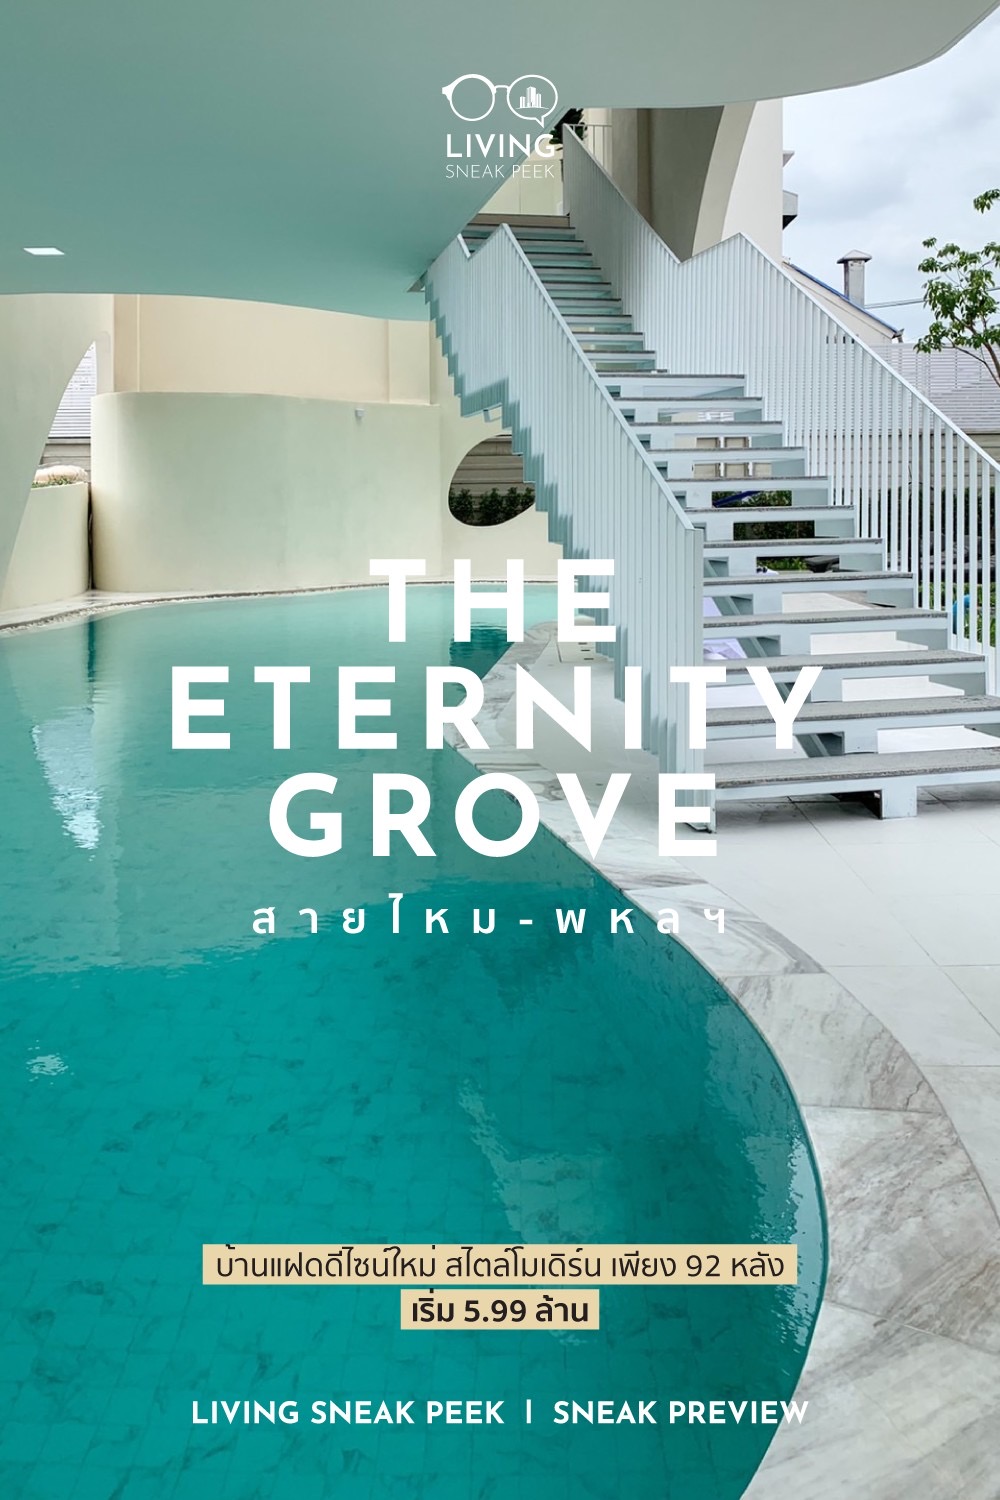 พาชม The Eternity Grove สายไหม-พหลฯ บ้านดีไซน์ใหม่จาก SE